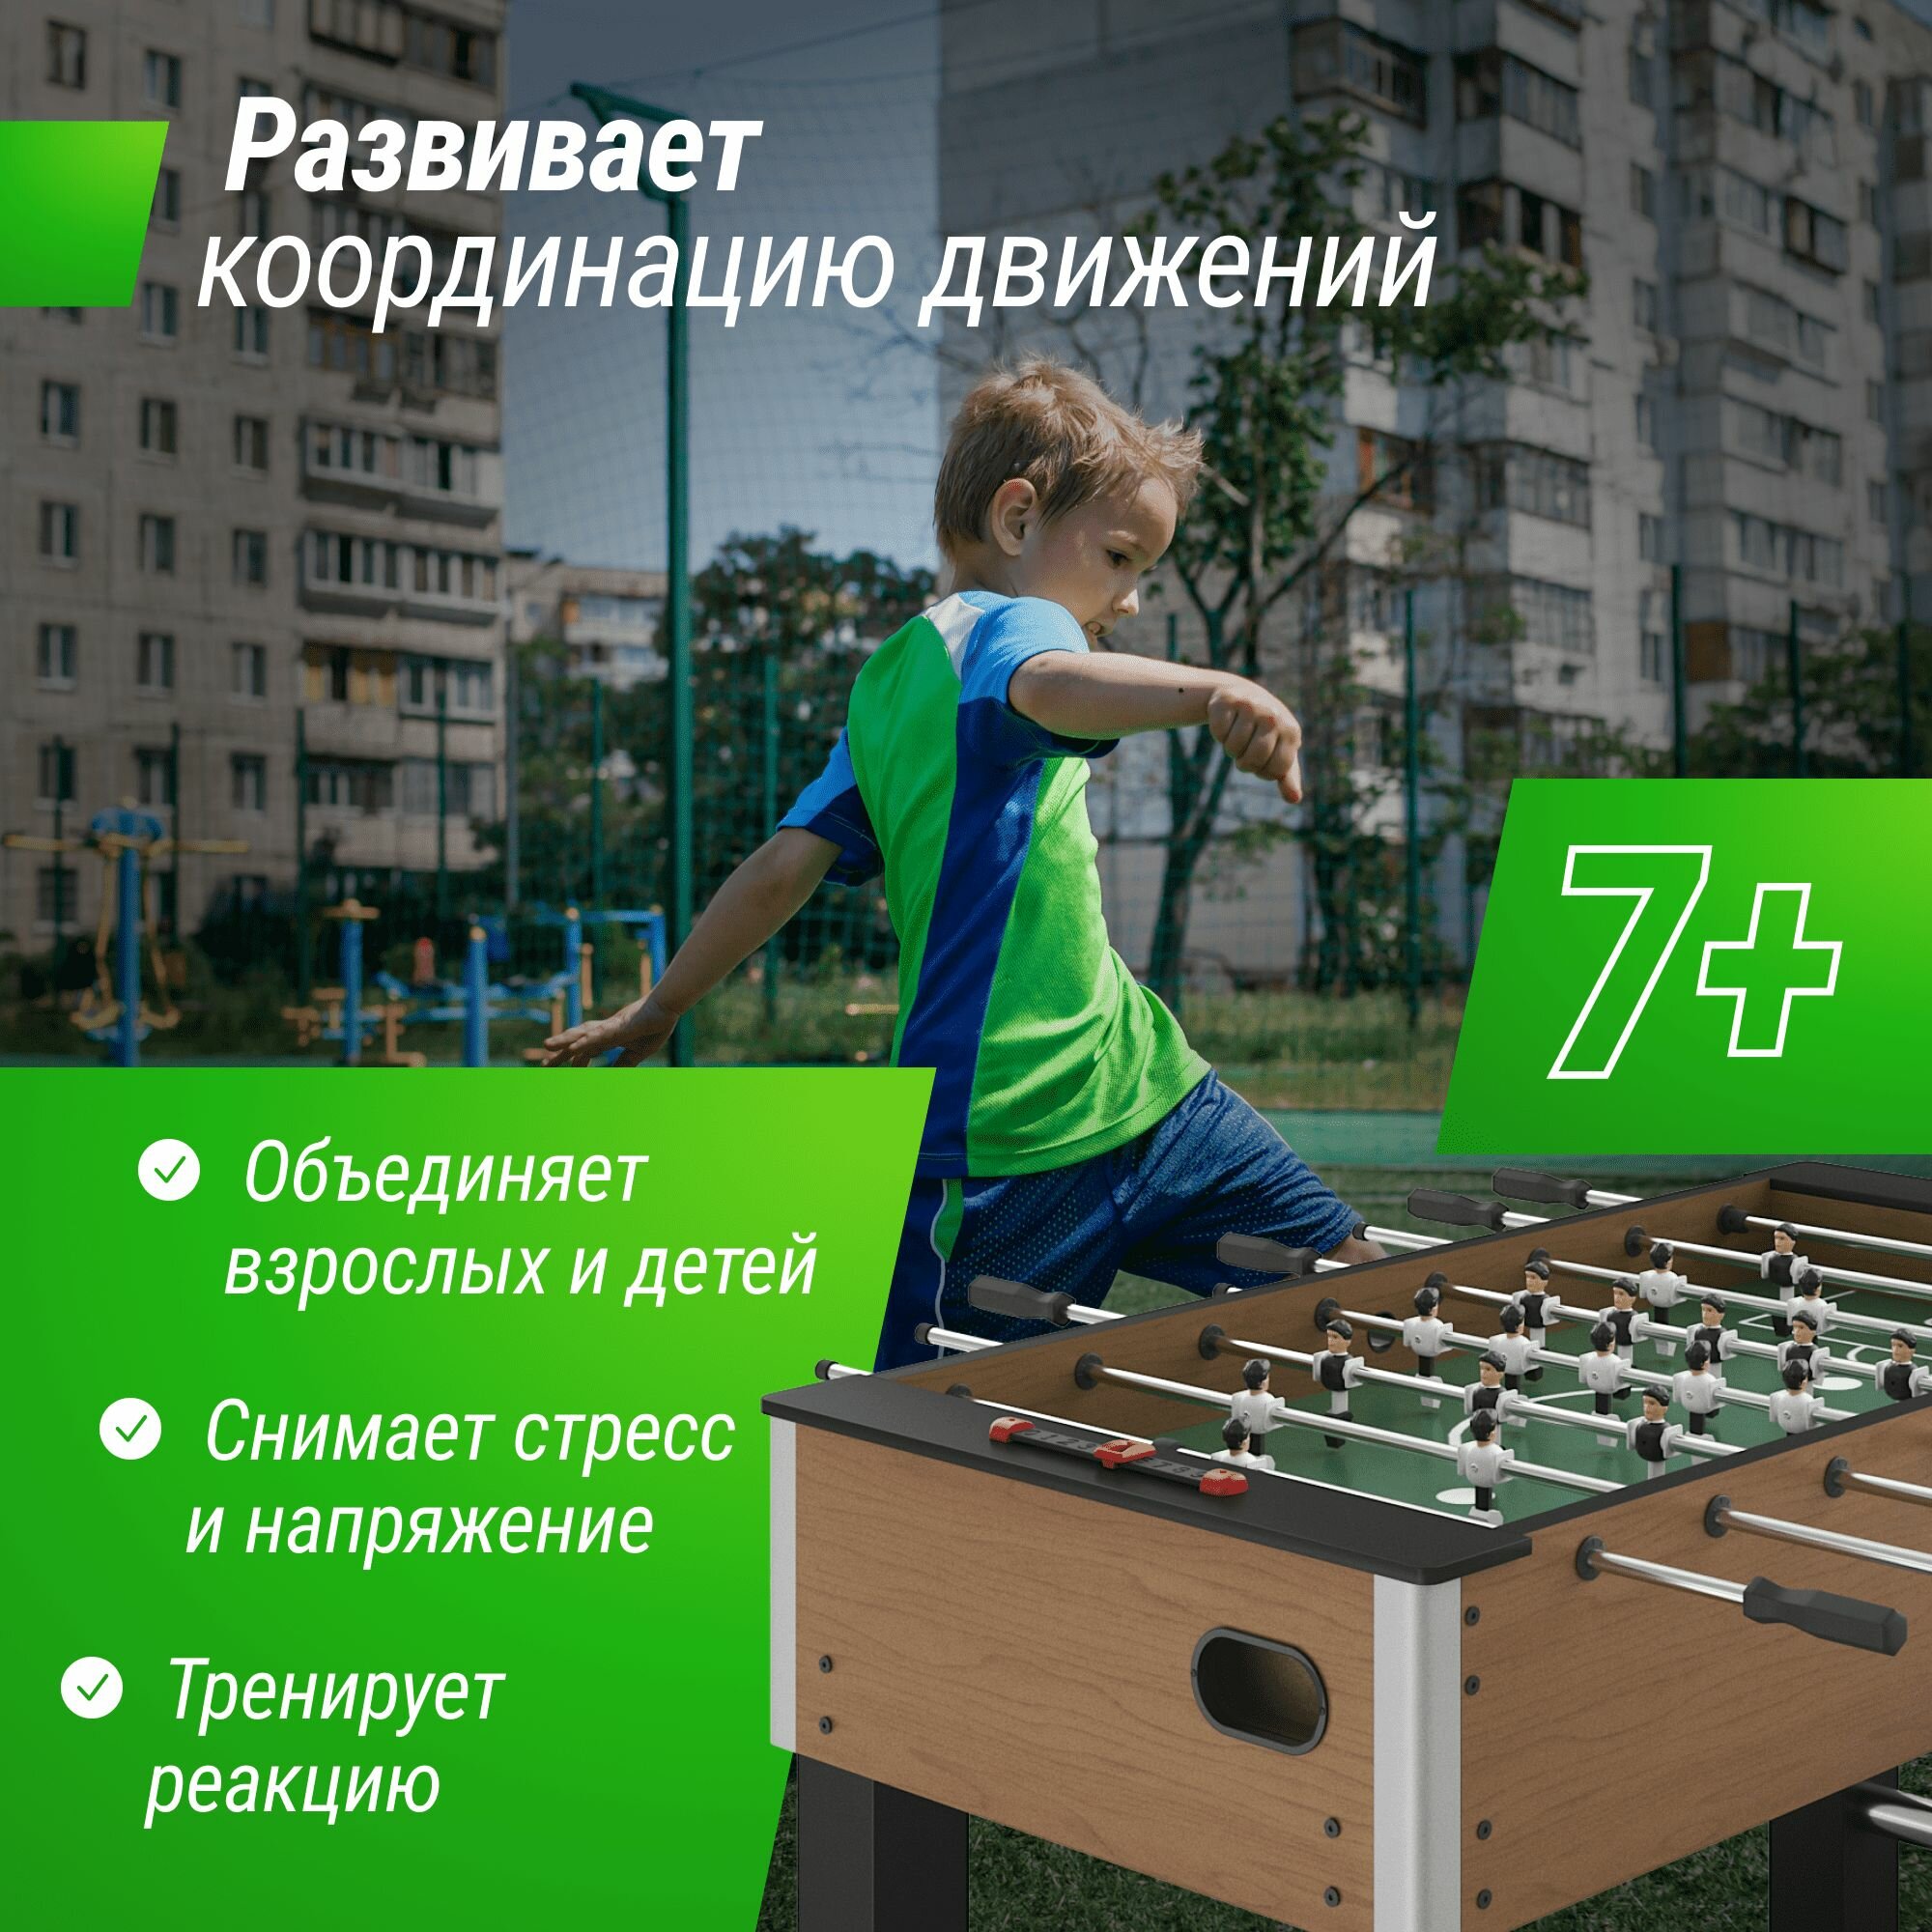 Игровой стол UNIX Line Футбол Кикер 140х74 cм, настольная игра для детей и взрослых, большой напольный футбол UNIXLINE